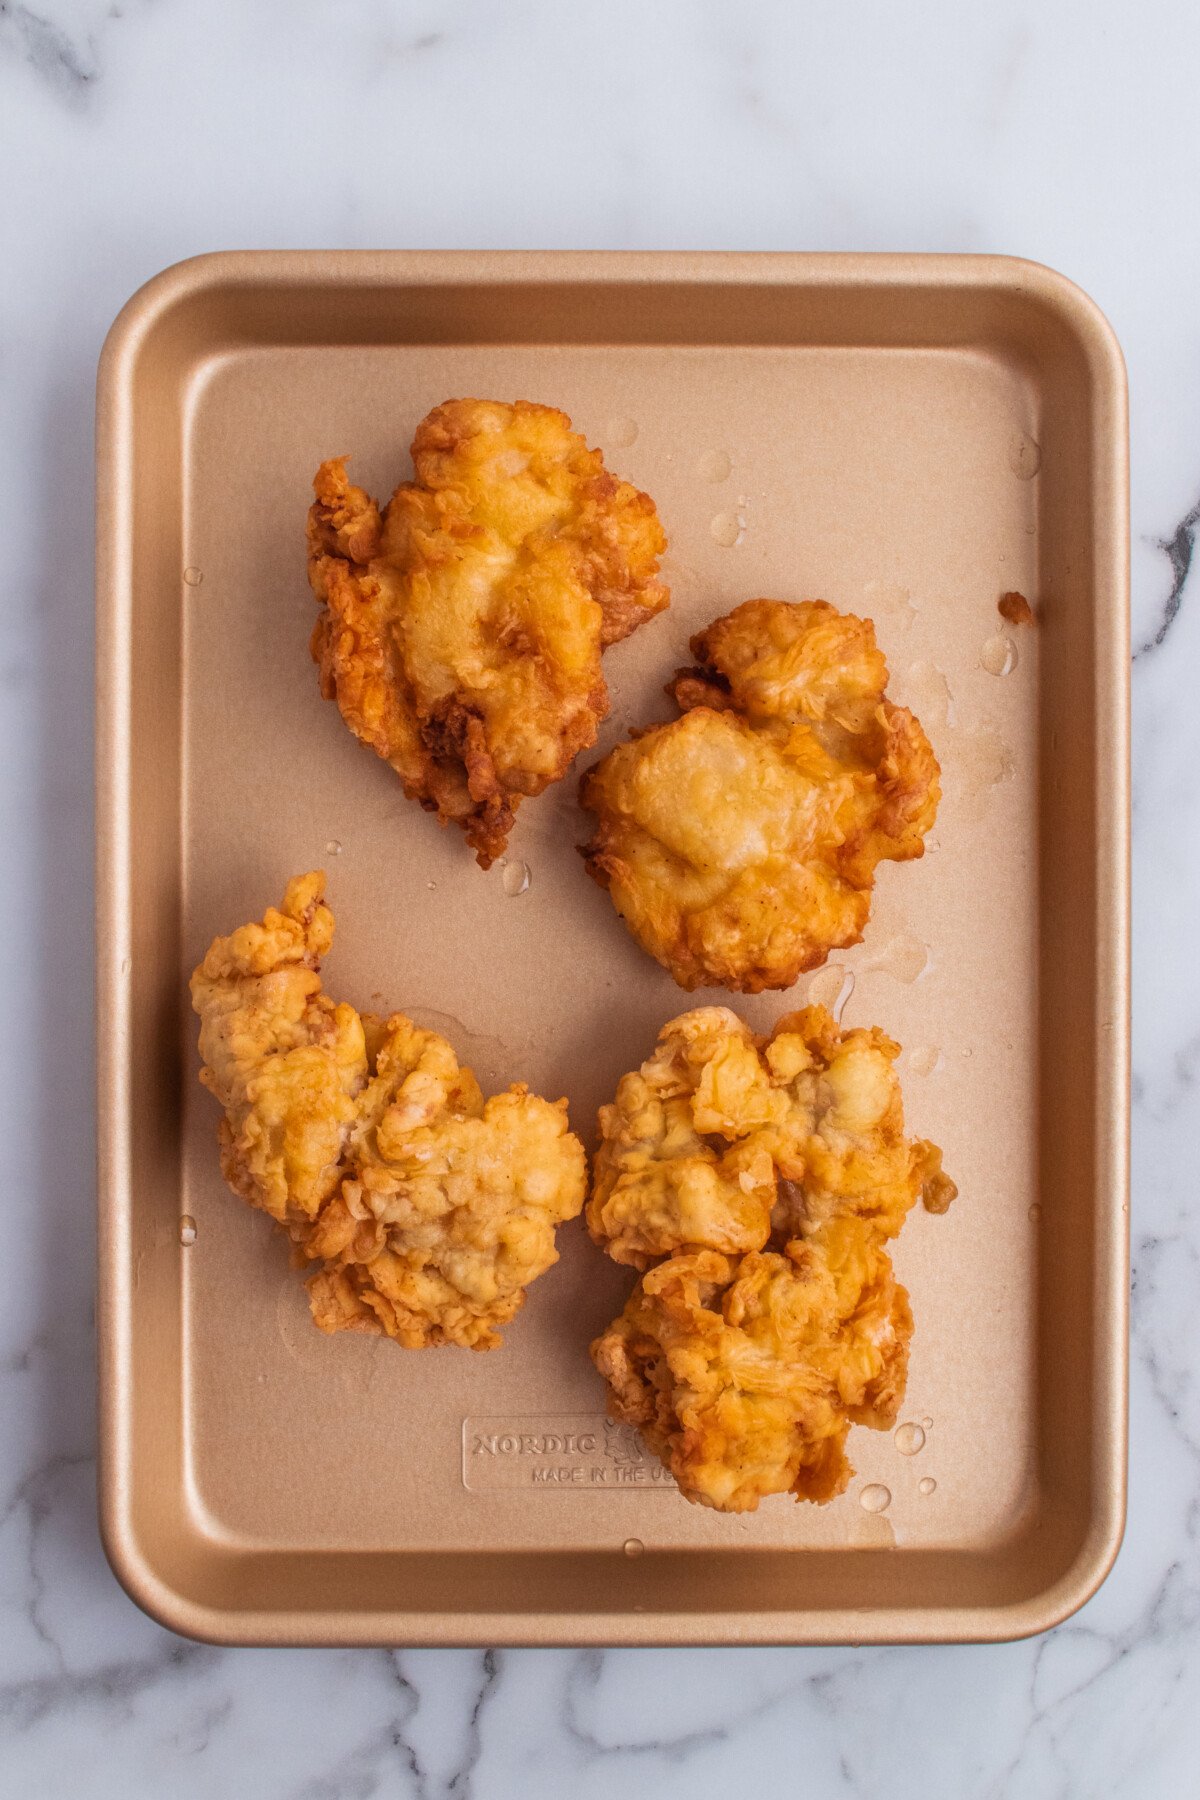 Golden fried chicken on a platter.